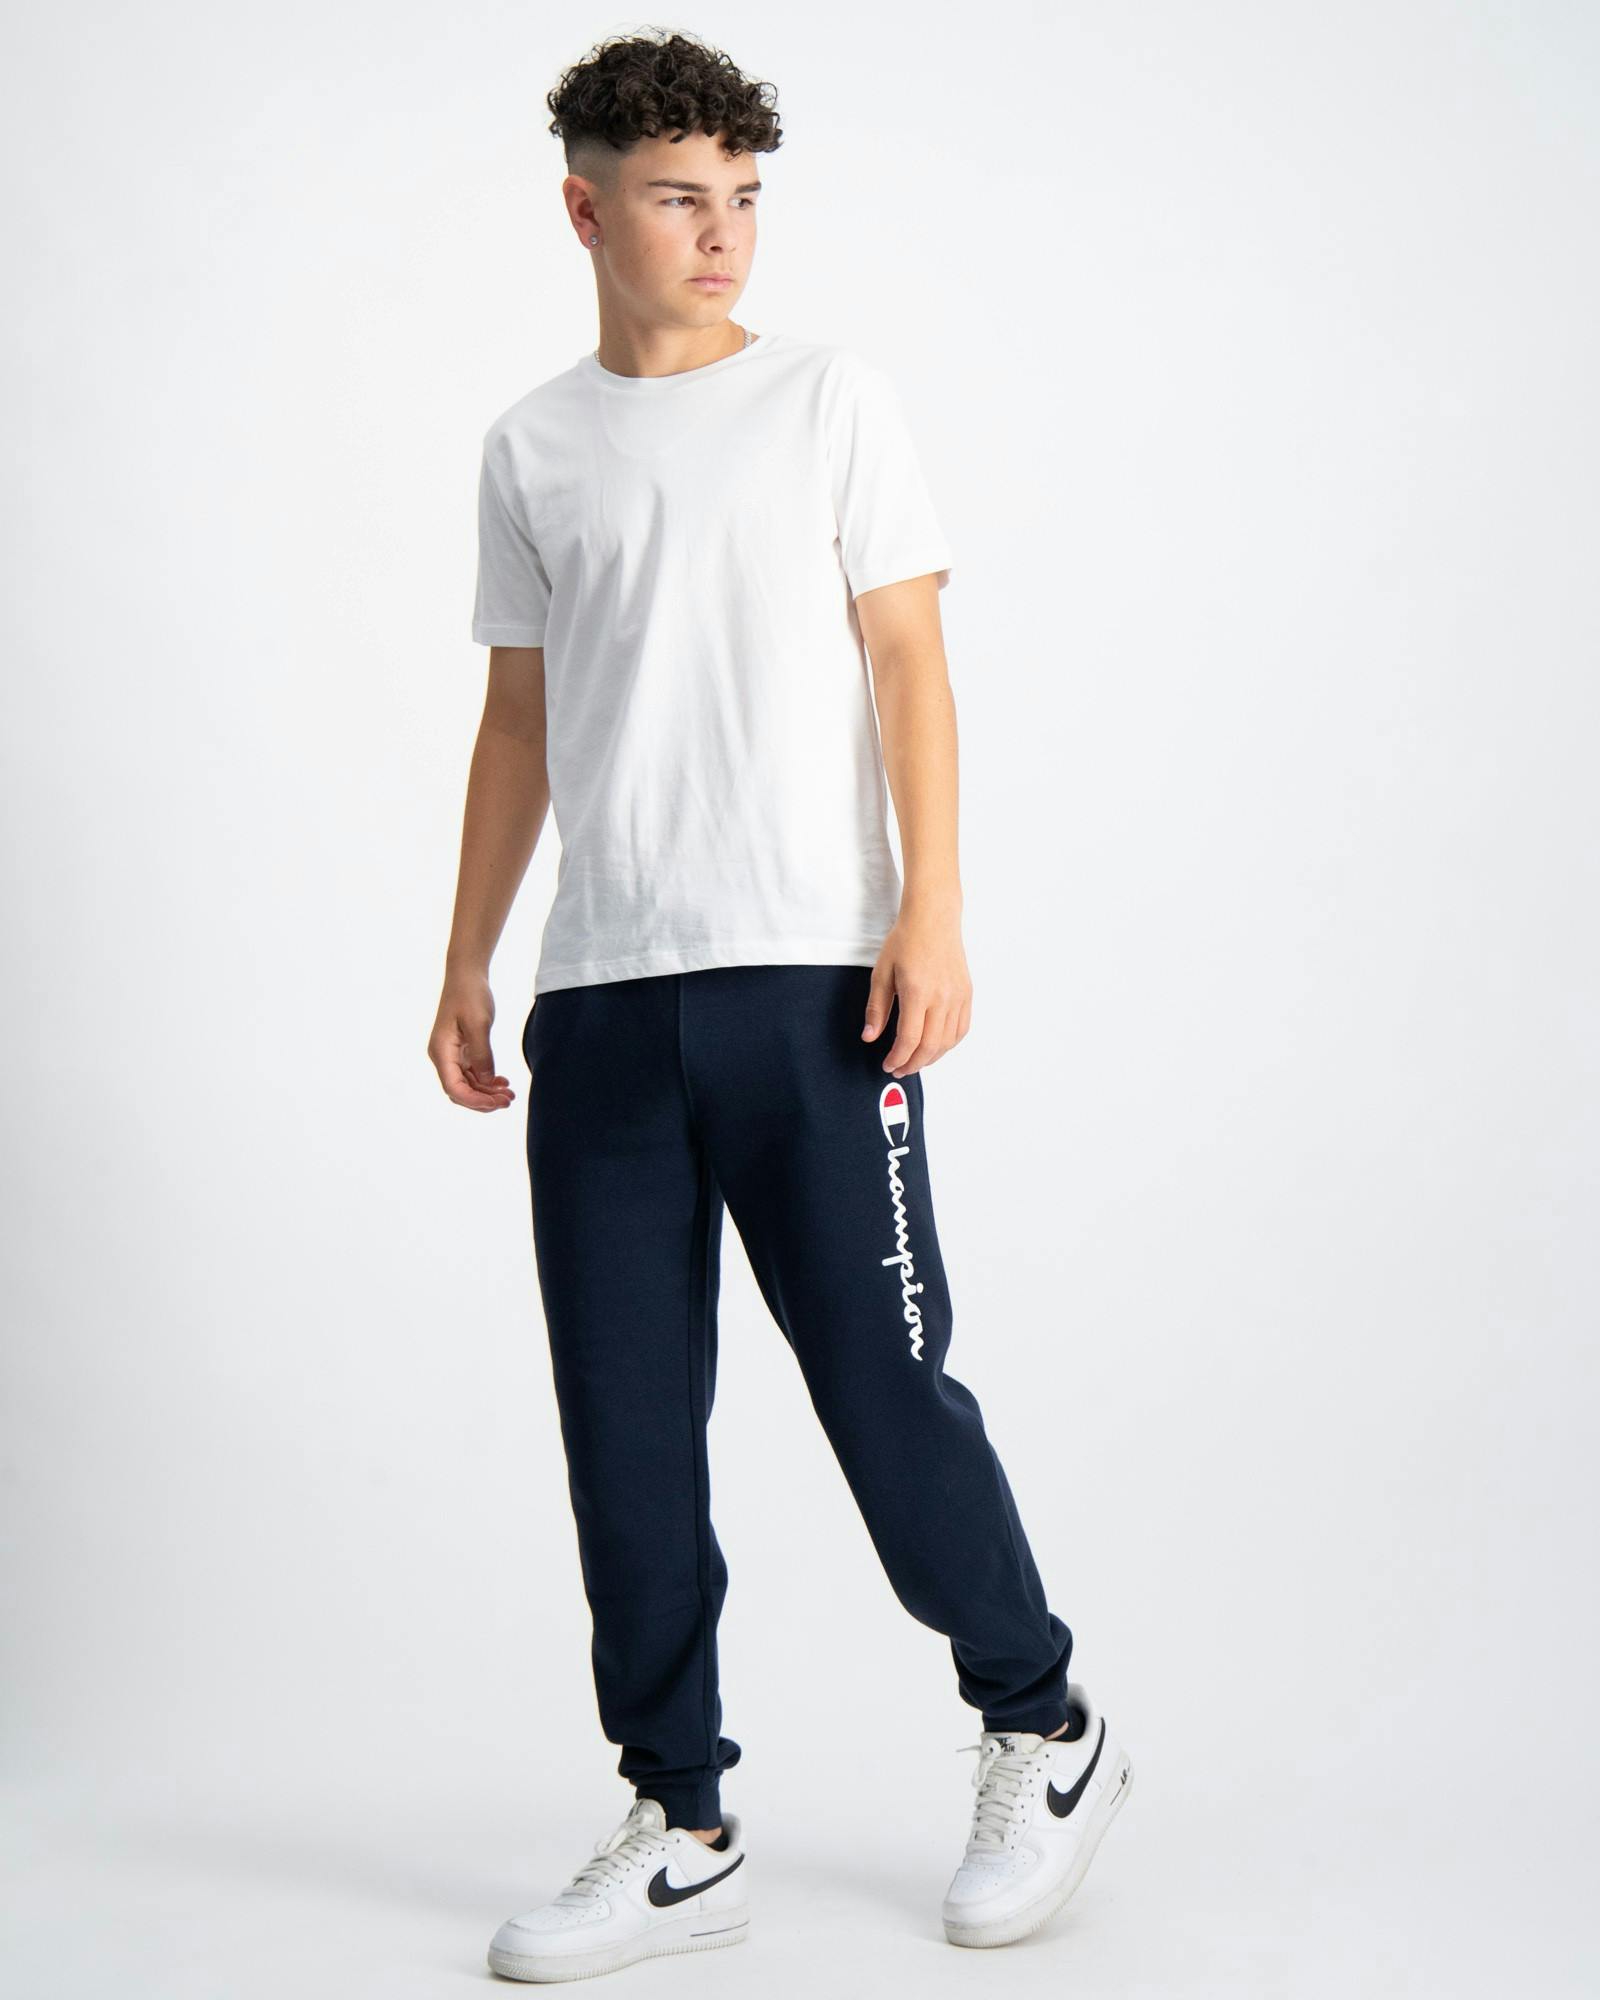 Blau Rib Cuff Pants für Jungen Store | Brand Kids